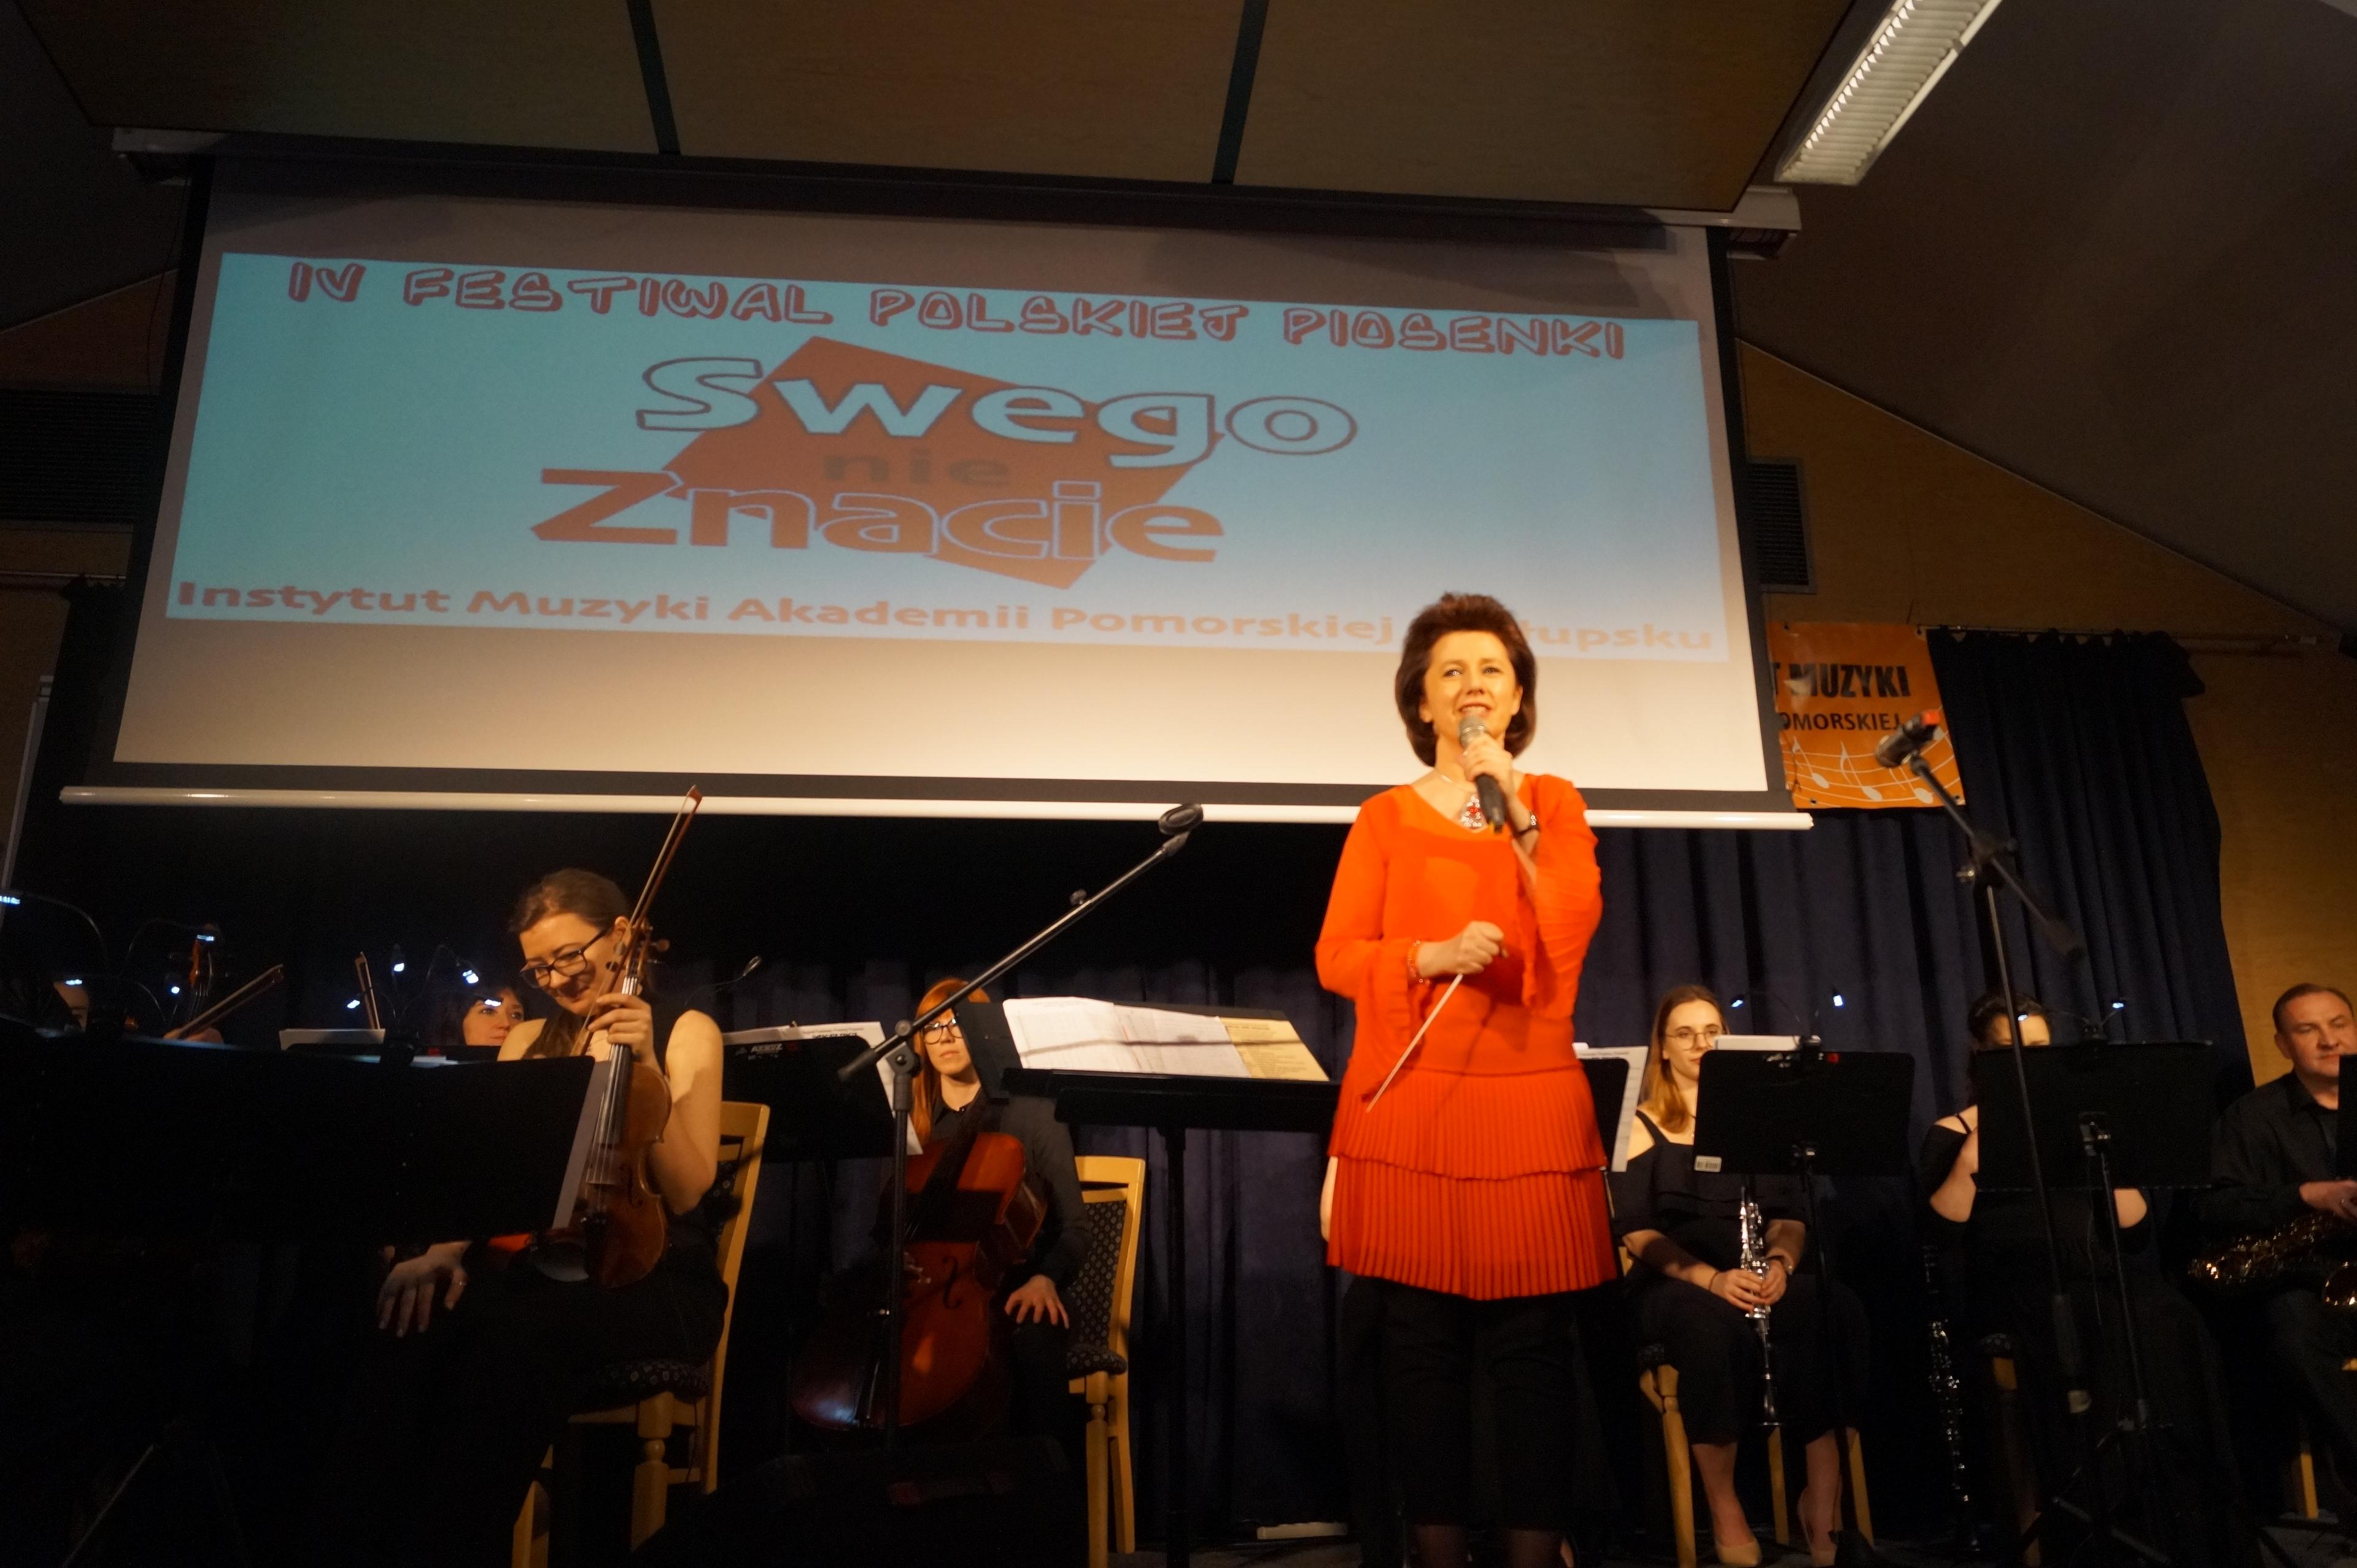 Koncert finałowy IV Festiwalu Polskiej Piosenki "Swego nie znacie"